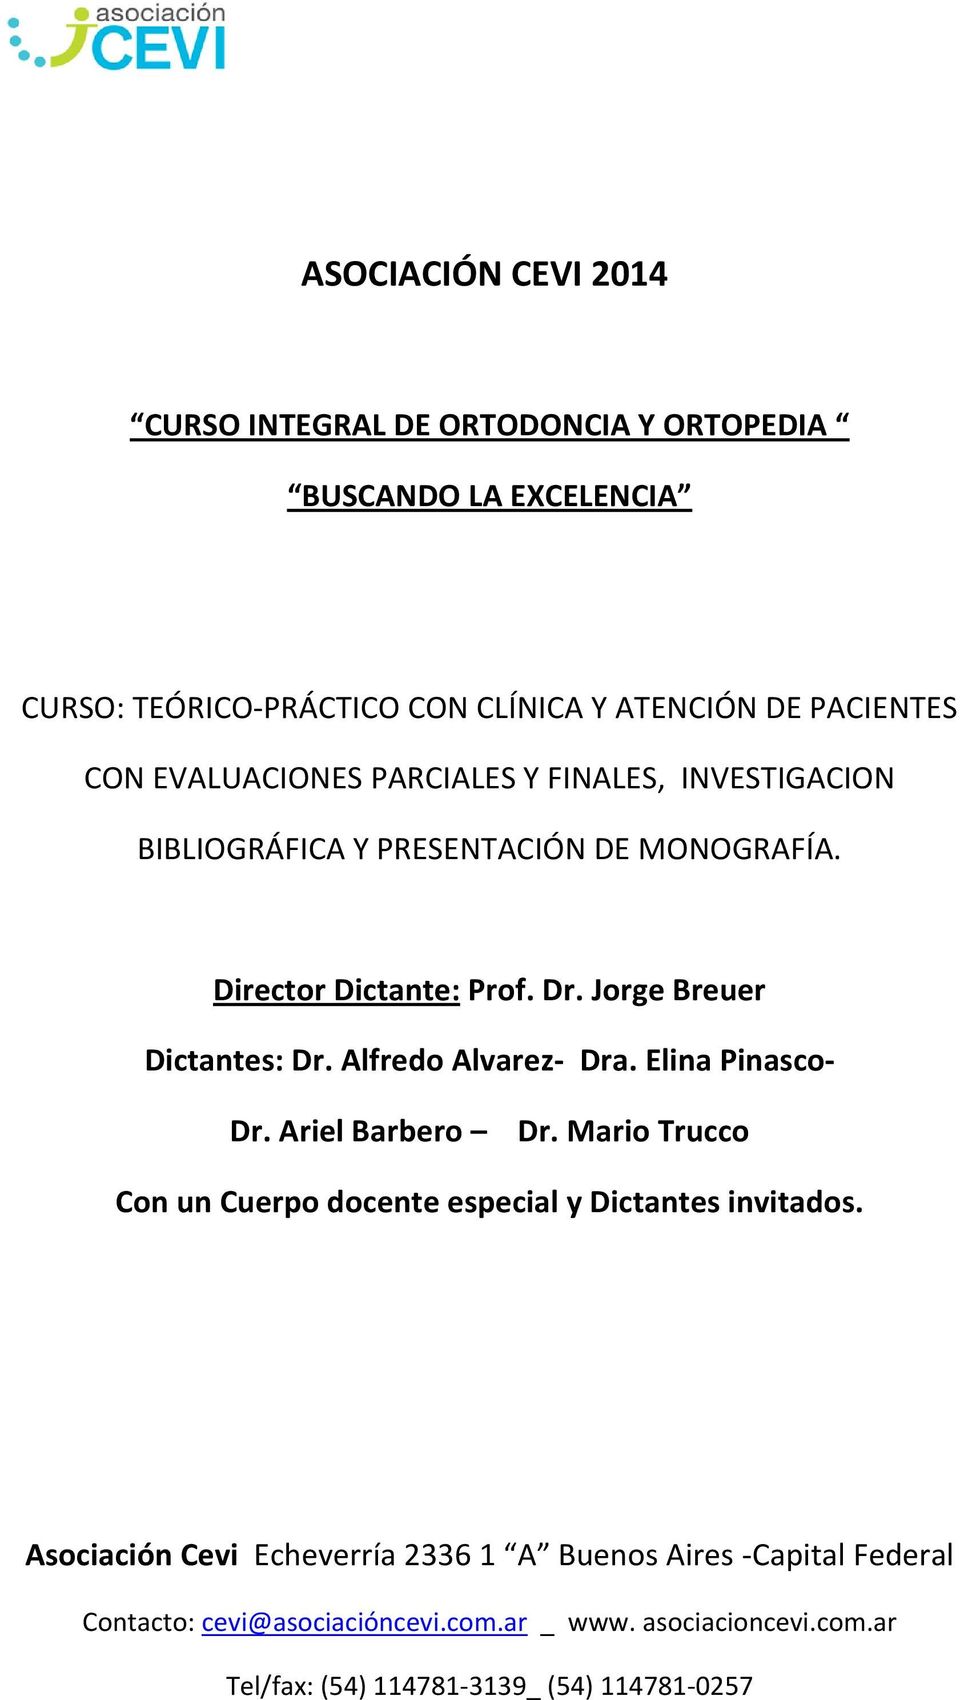 Alfredo Alvarez- Dra. Elina Pinasco- Dr. Ariel Barbero Dr. Mario Trucco Con un Cuerpo docente especial y Dictantes invitados.